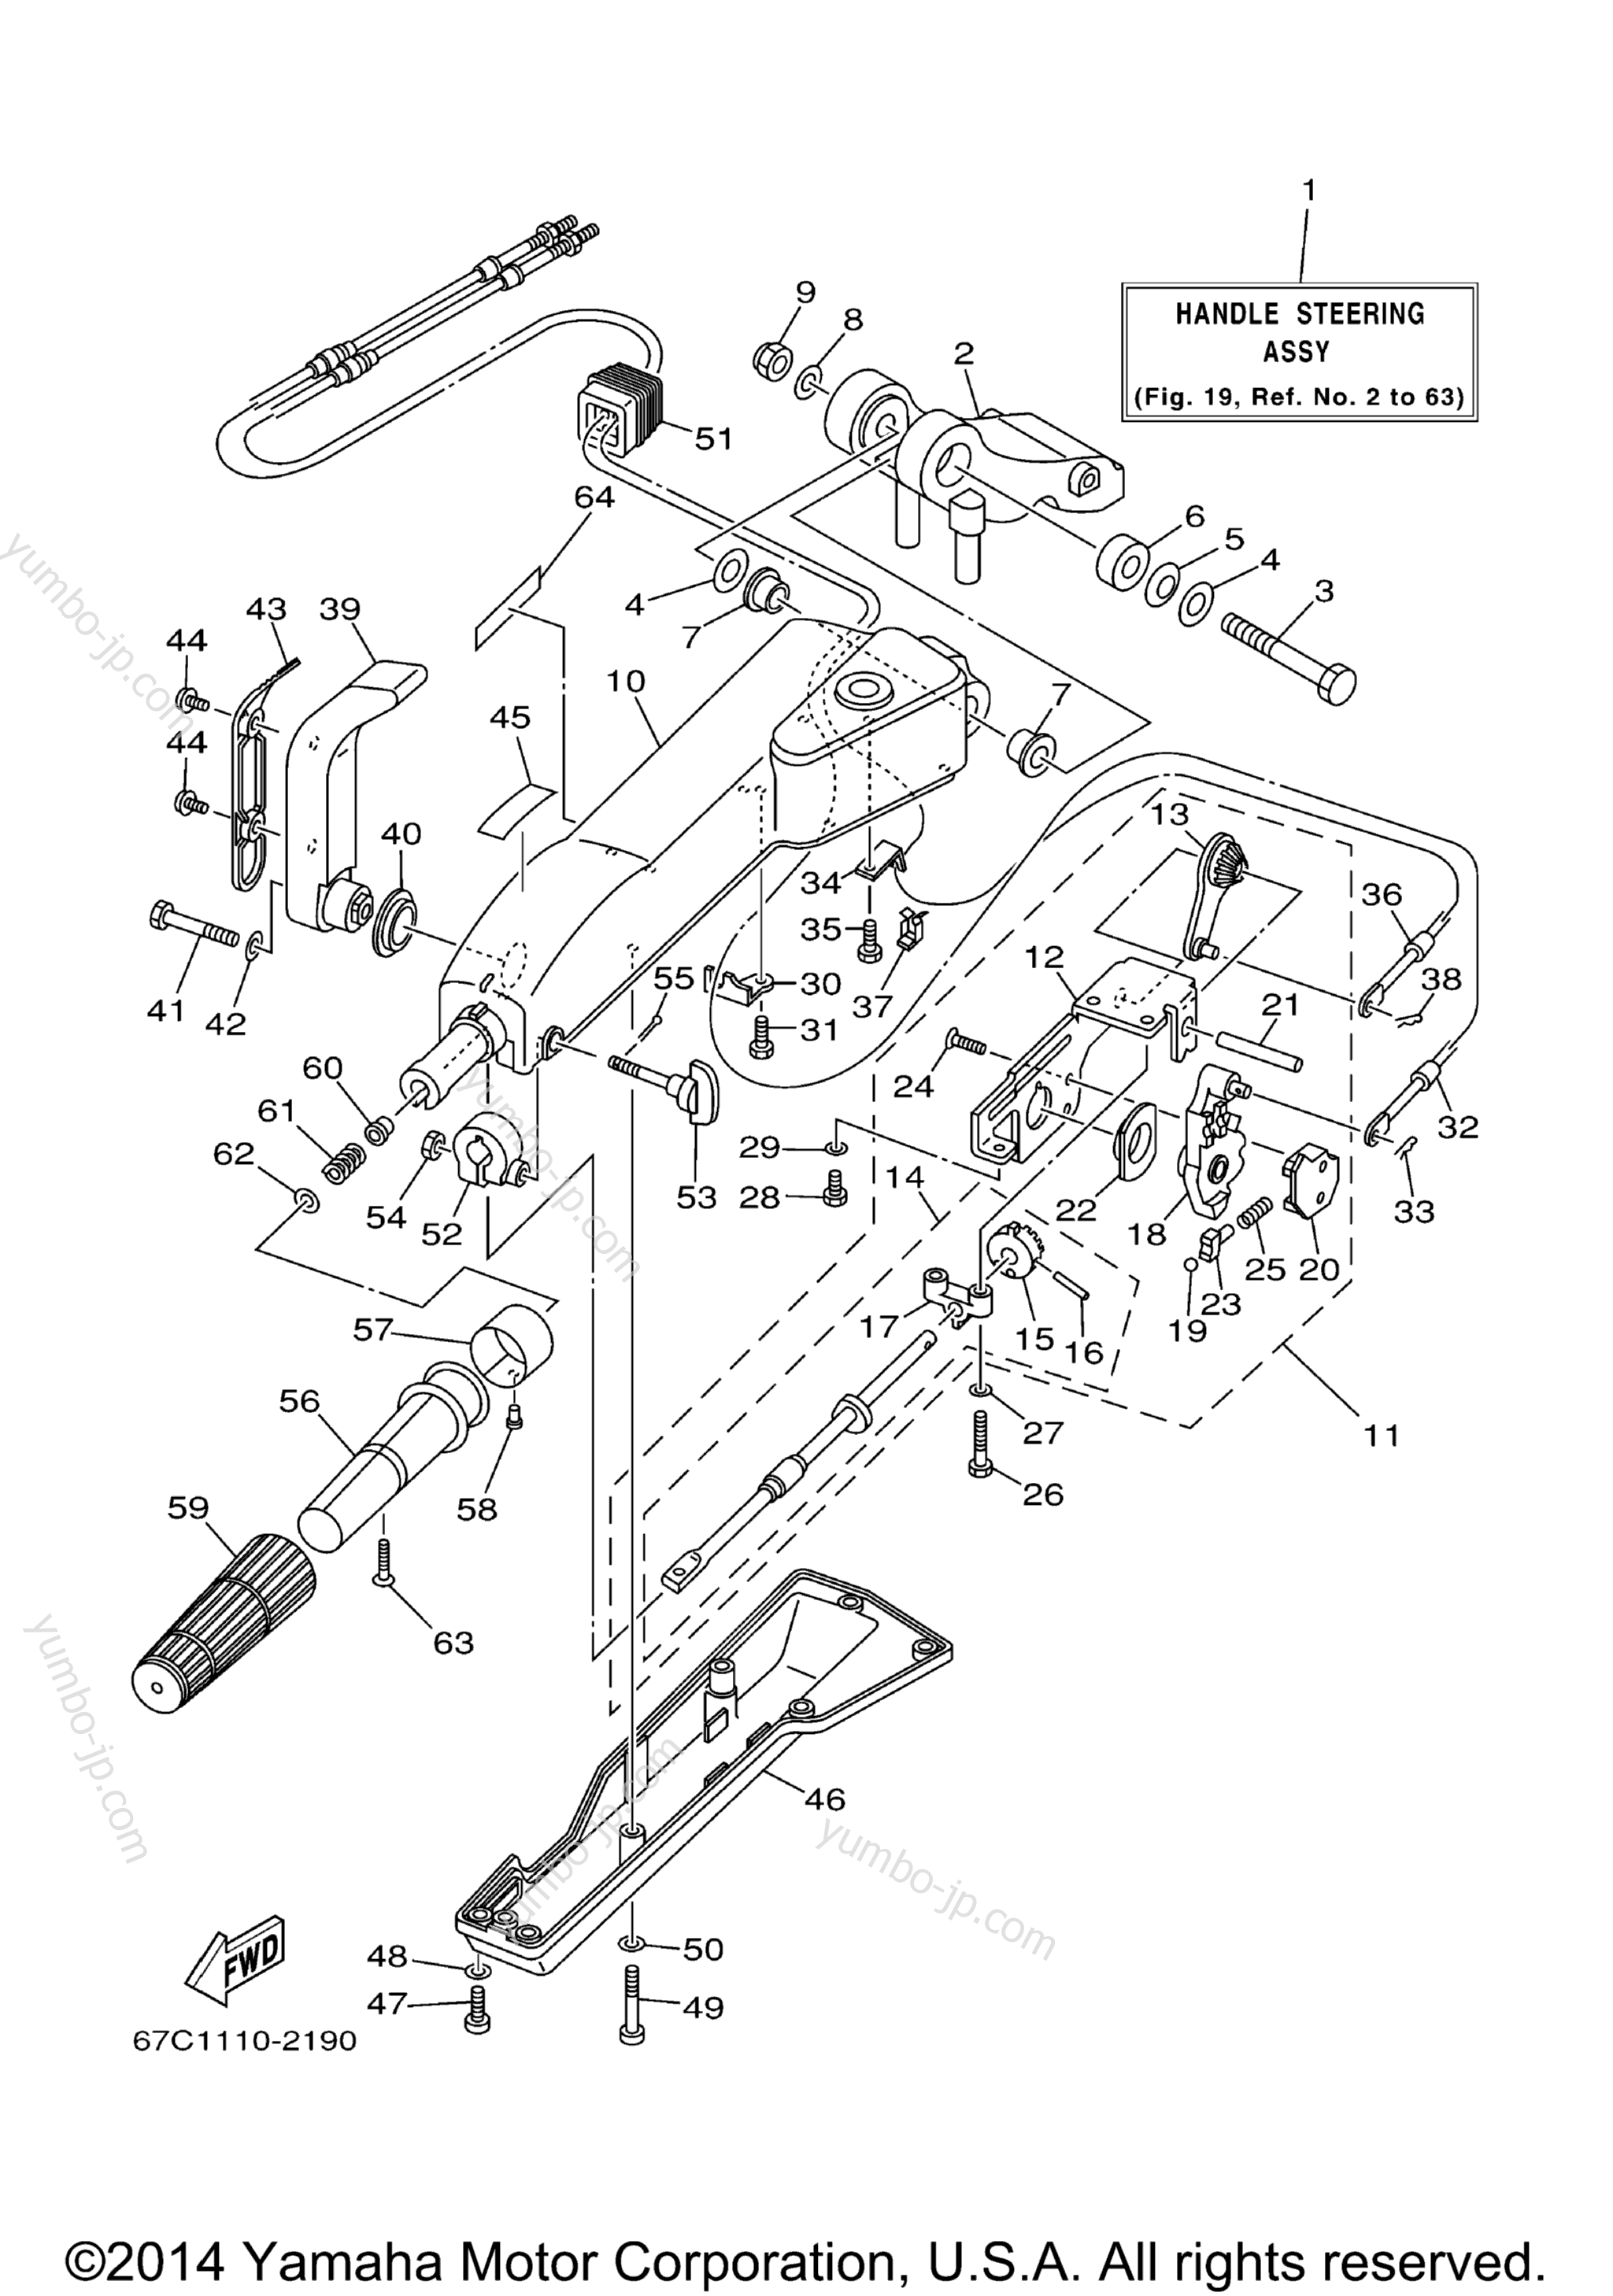 Steering Mh для лодочных моторов YAMAHA F40MSHB_MLHB_MJHB_EJRB_ESRB_TLRB (F40MSHB) 2003 г.